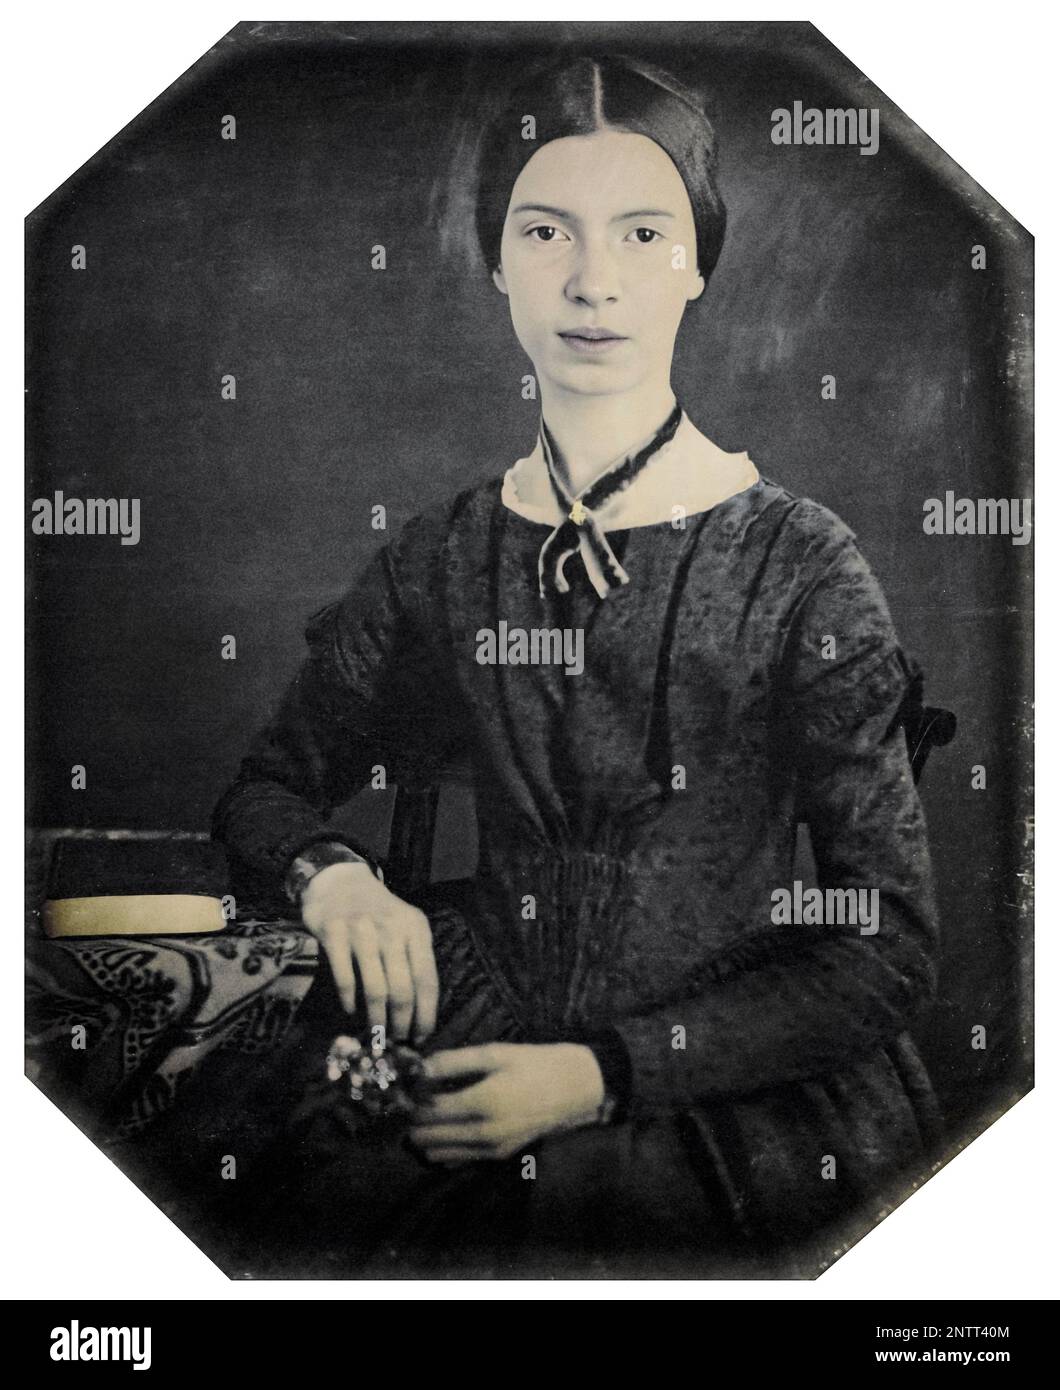 Emily Dickinson (1830-1886), poète américain, photographie de portrait, daguerréotype d'artiste inconnu, 1846-1847 Banque D'Images